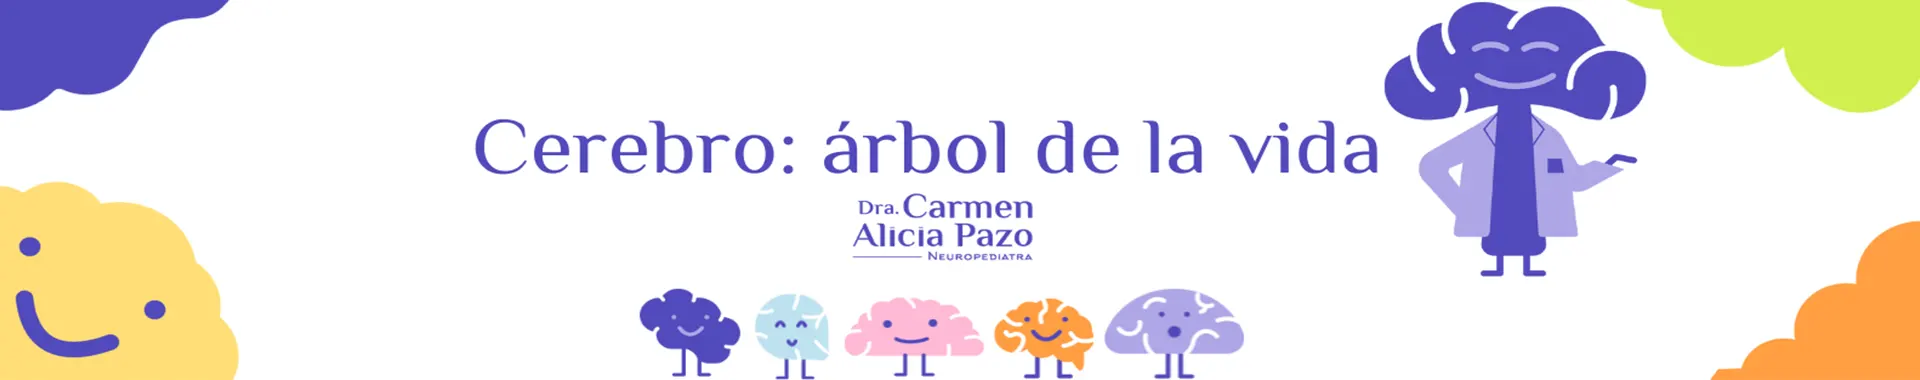 Imagen 1 del perfil de Dra. Carmen Alicia Pazo